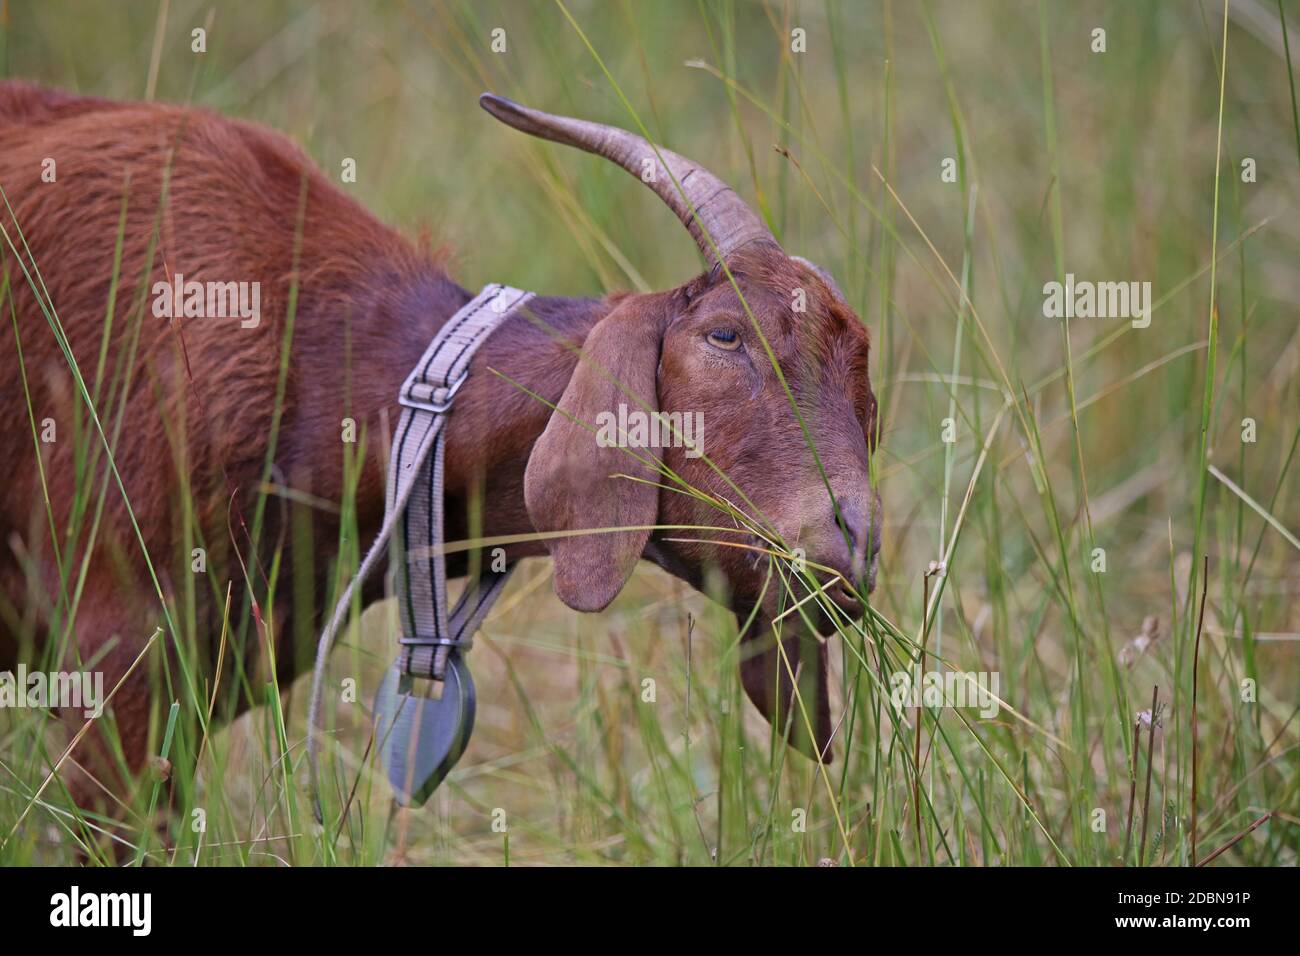 Willowbrown goat Capra aegagrus hircus Stock Photo